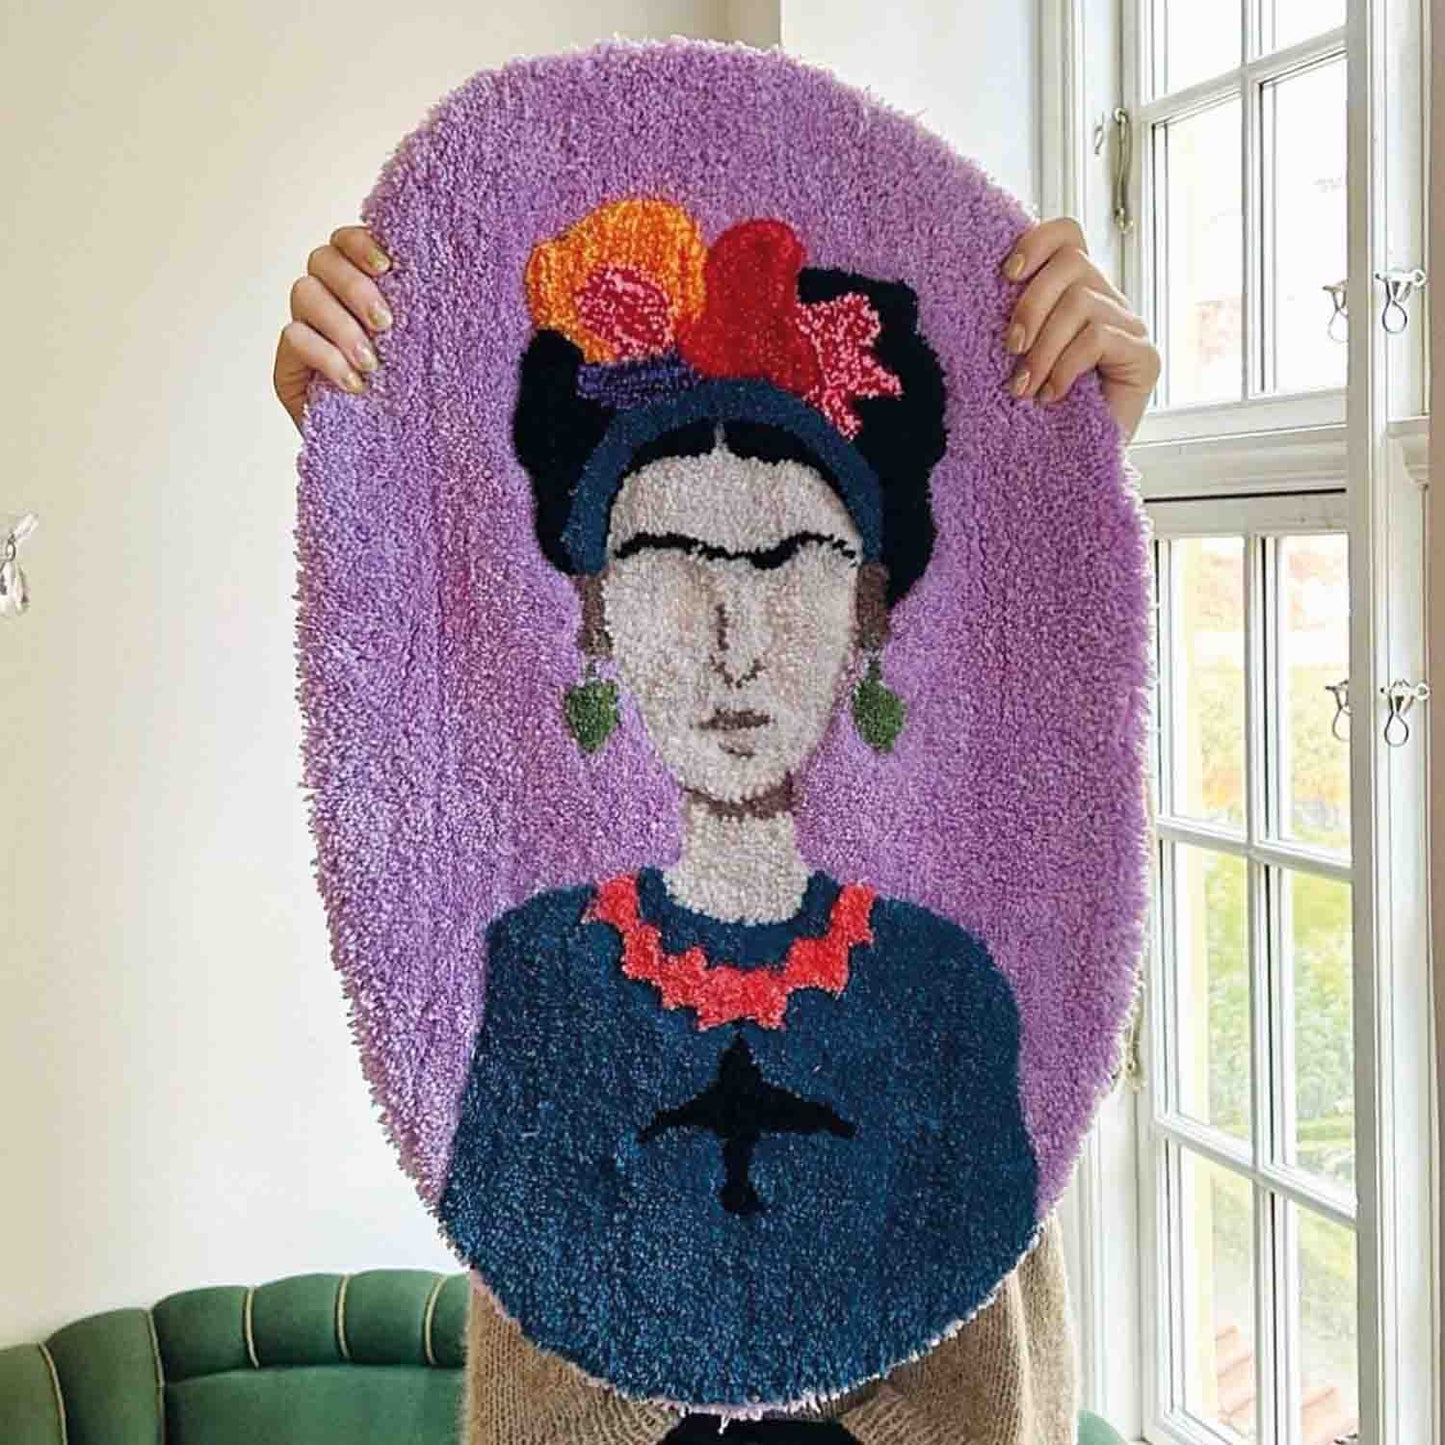 Frida Kahlo designs